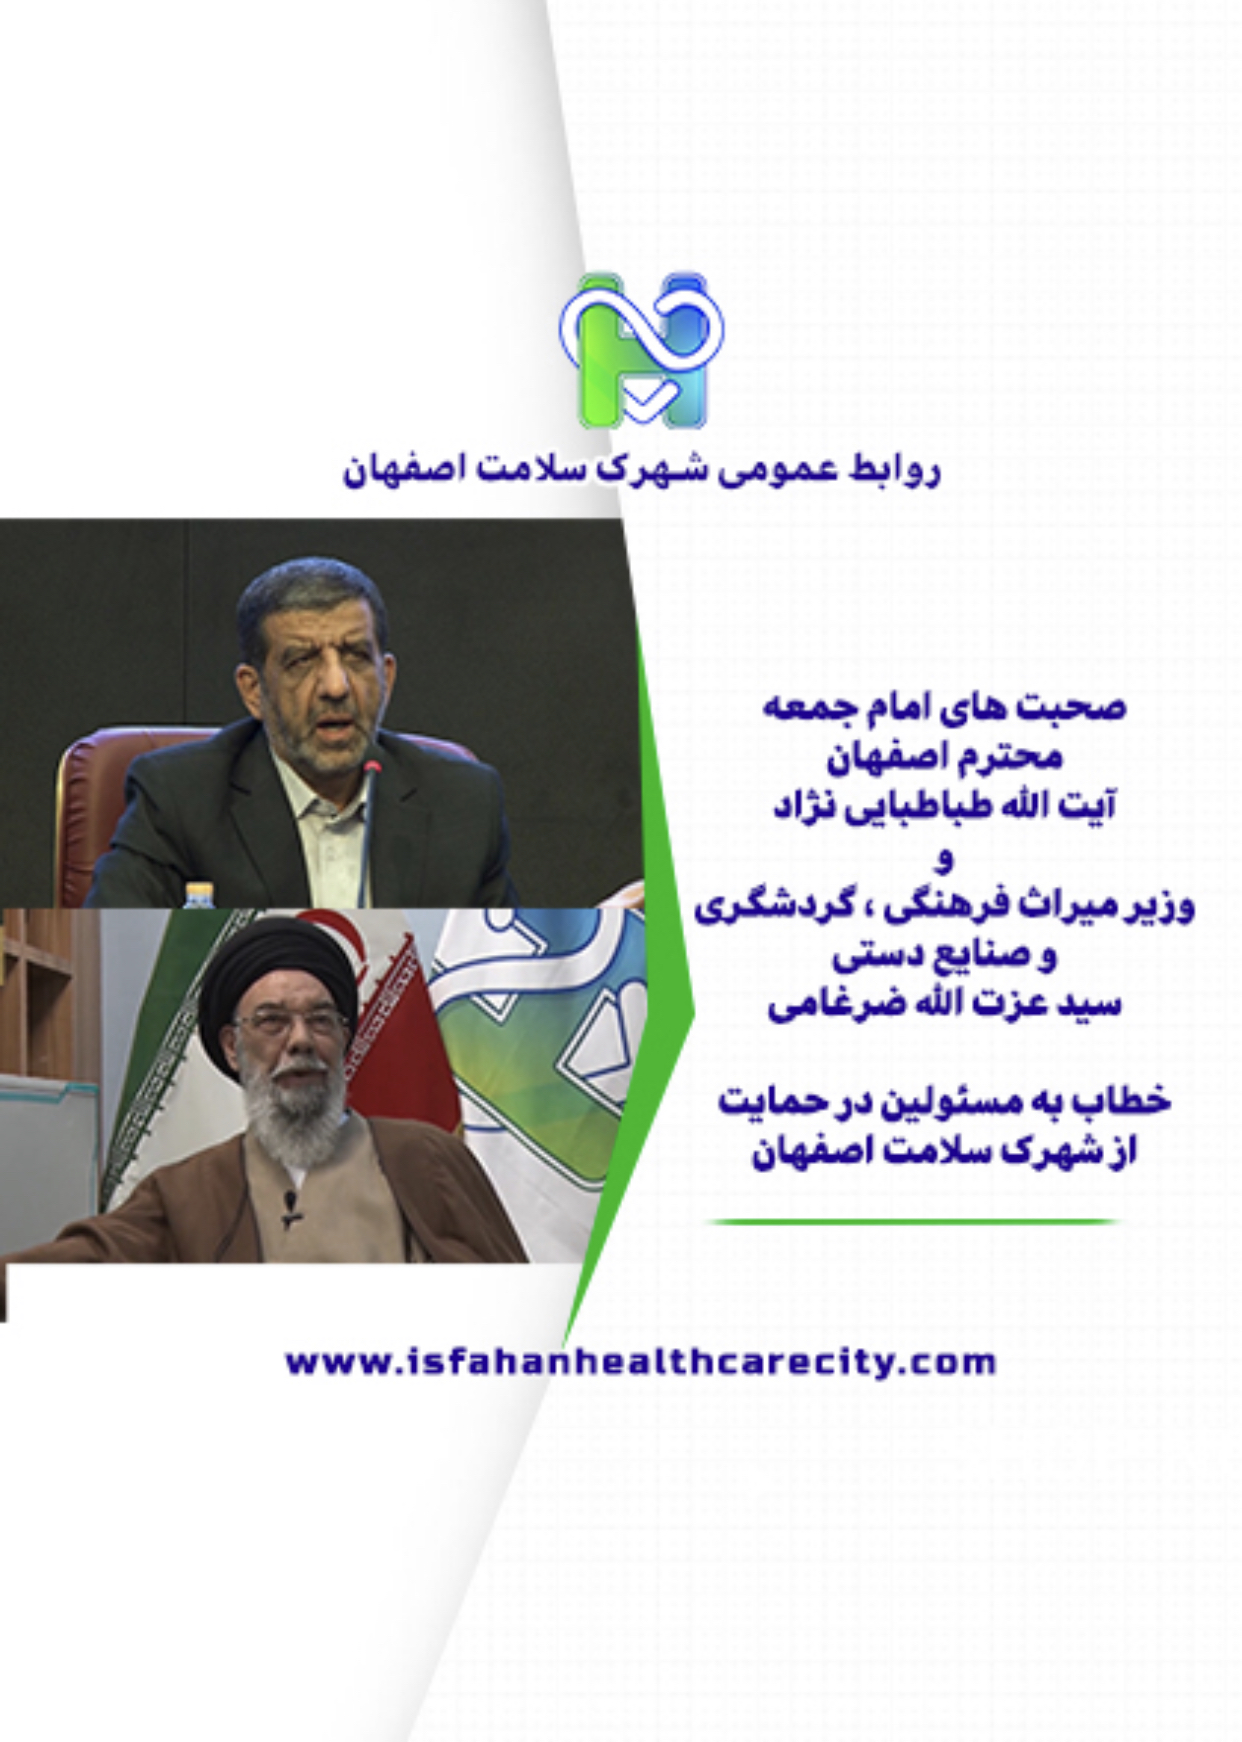 صحبت های امام جمعه اصفهان و وزیر میراث فرهنگی خطاب به مسئولین  در حمایت از شهرک سلامت 